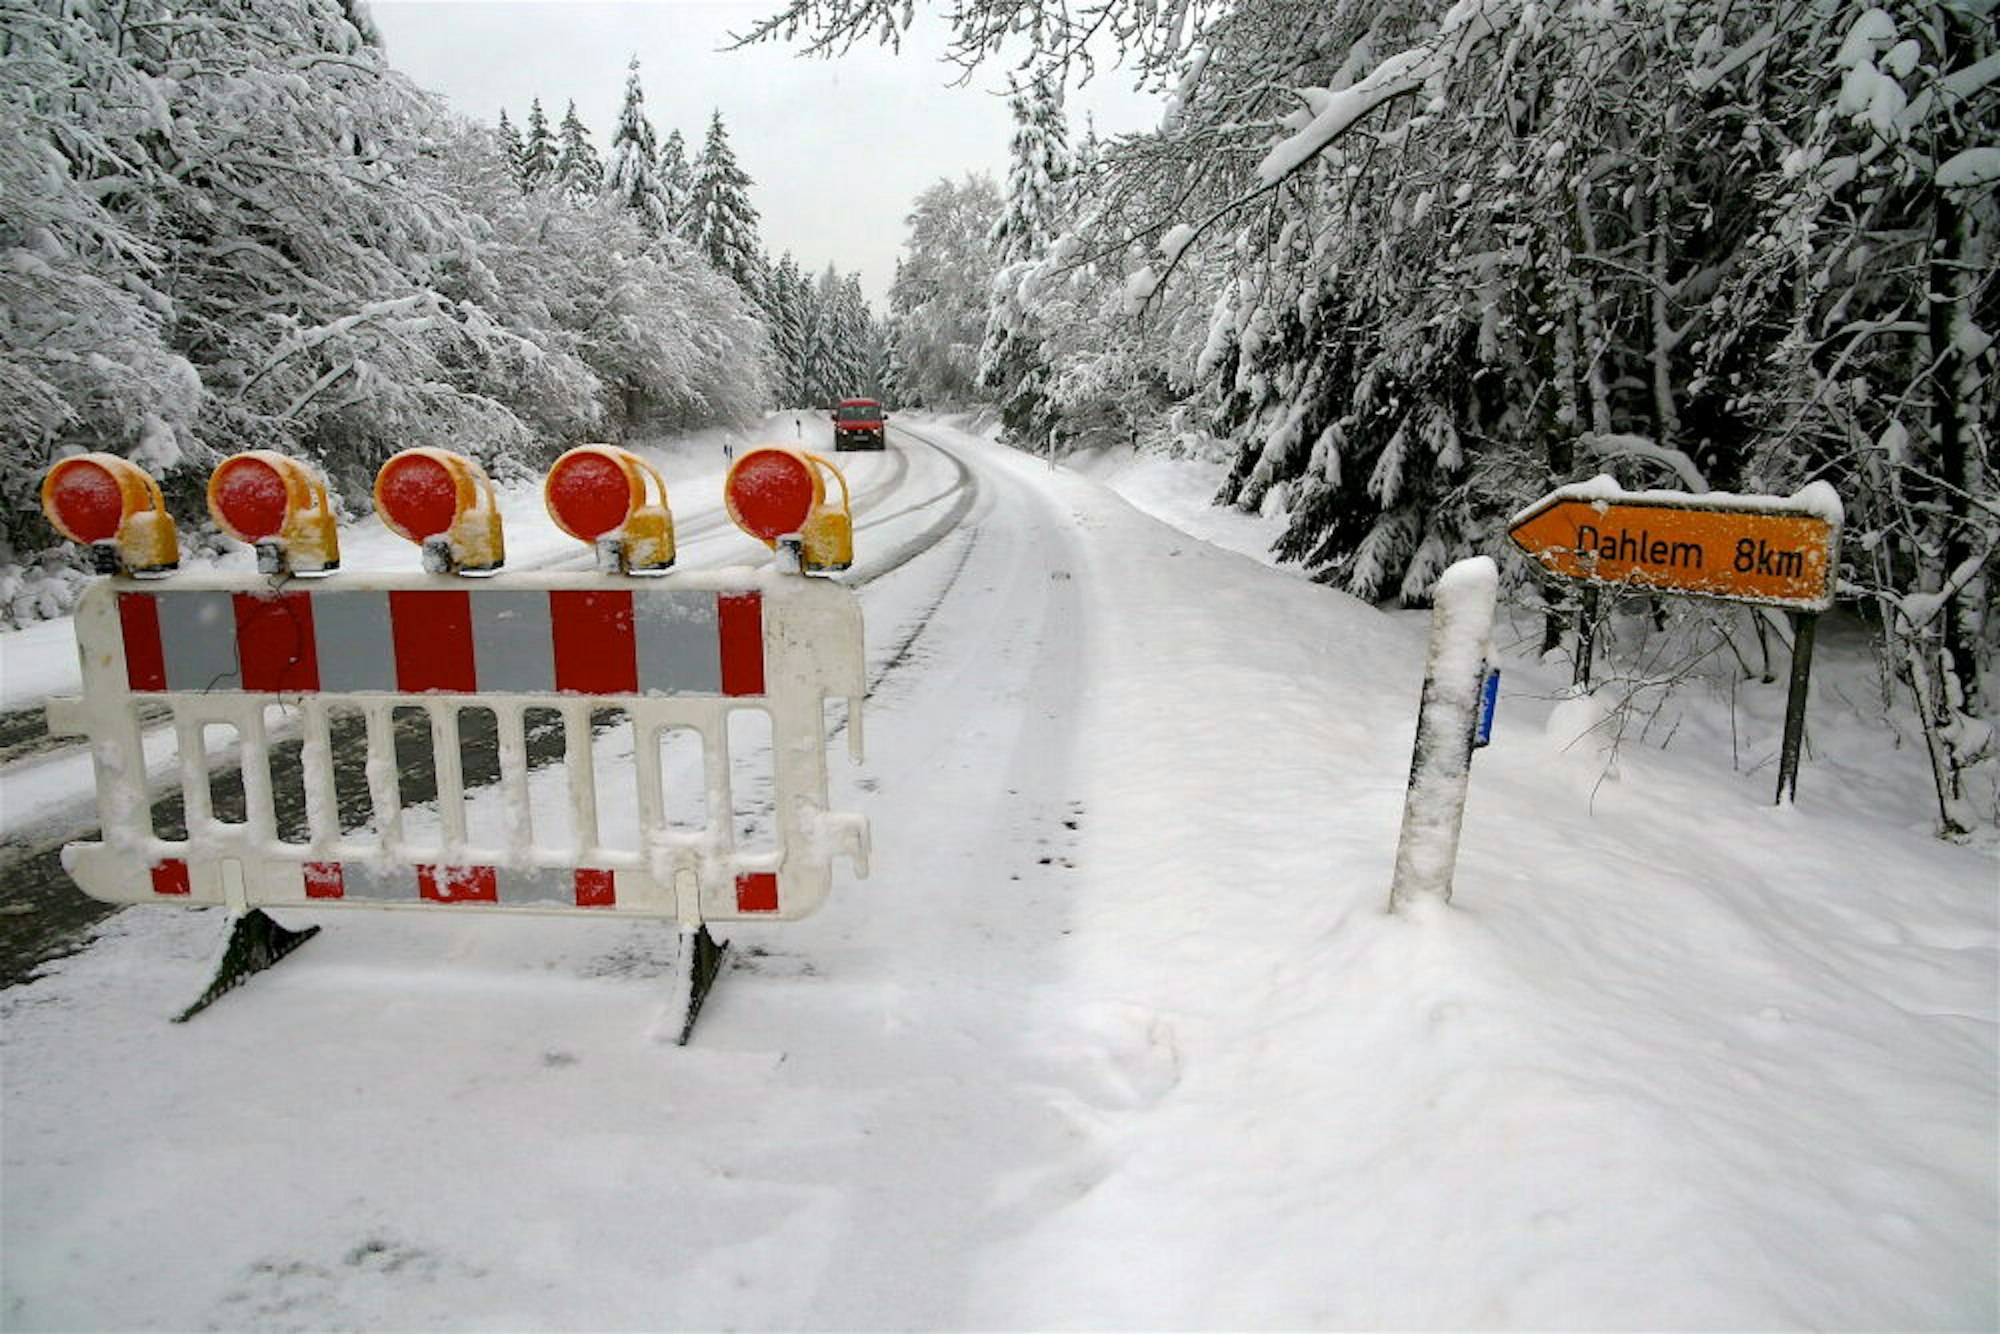 Gesperrt: Eine Fahrt auf der L 110 zwischen Neuhaus und Dahlem birgt erhebliche Gefahren. Hier wurde der Winterdienst eingestellt.